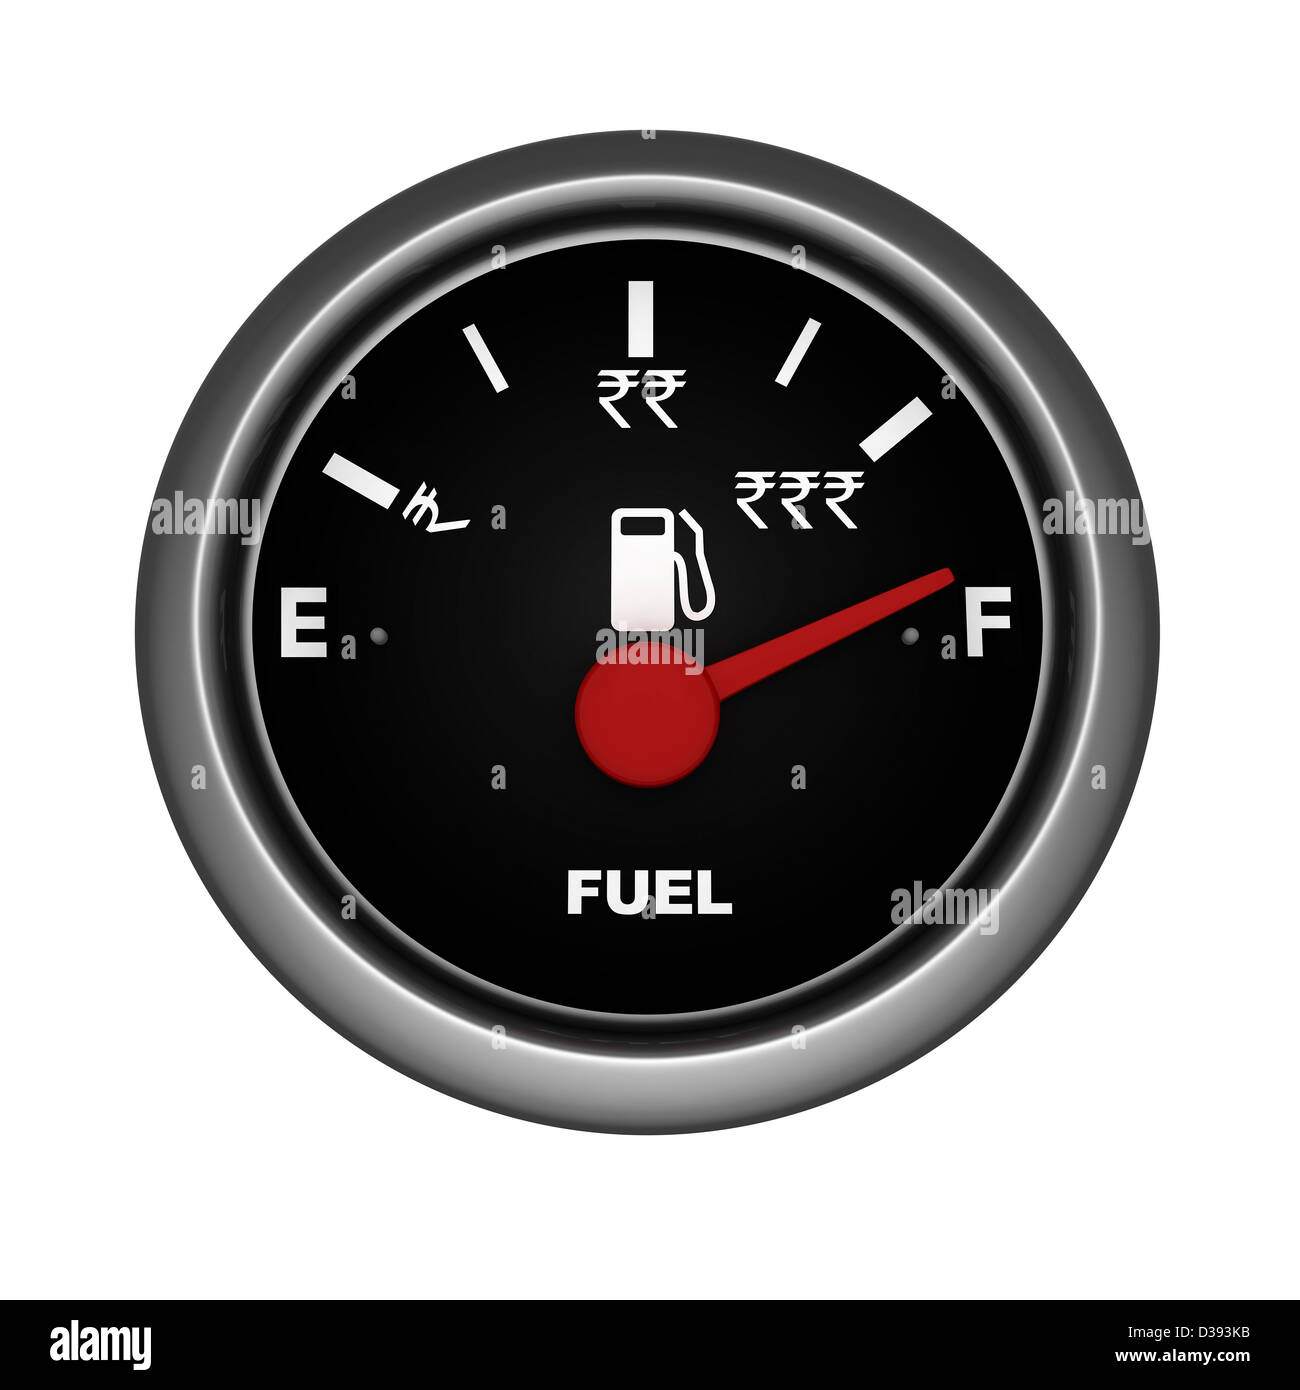 Indicatore della benzina immagini e fotografie stock ad alta risoluzione -  Alamy